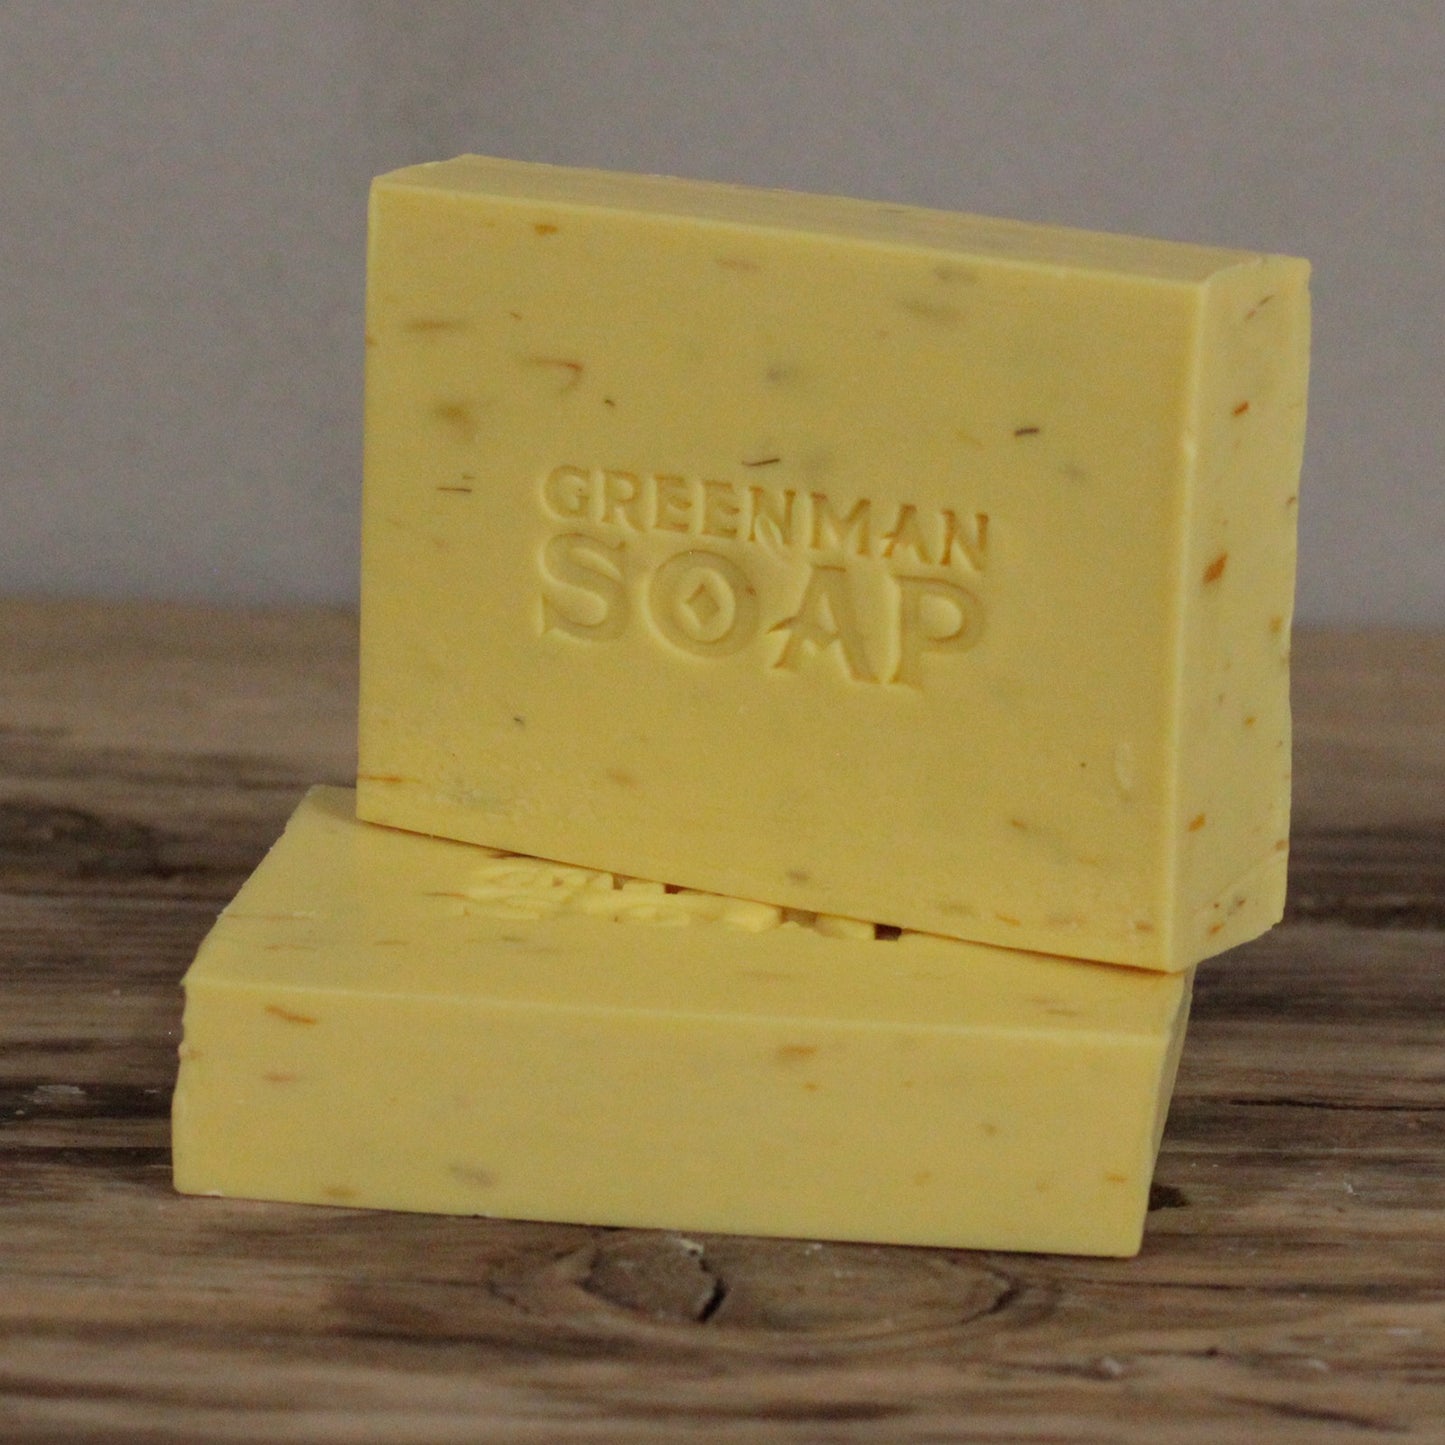 Gentle & Kind Greenman Soap Slice 100g